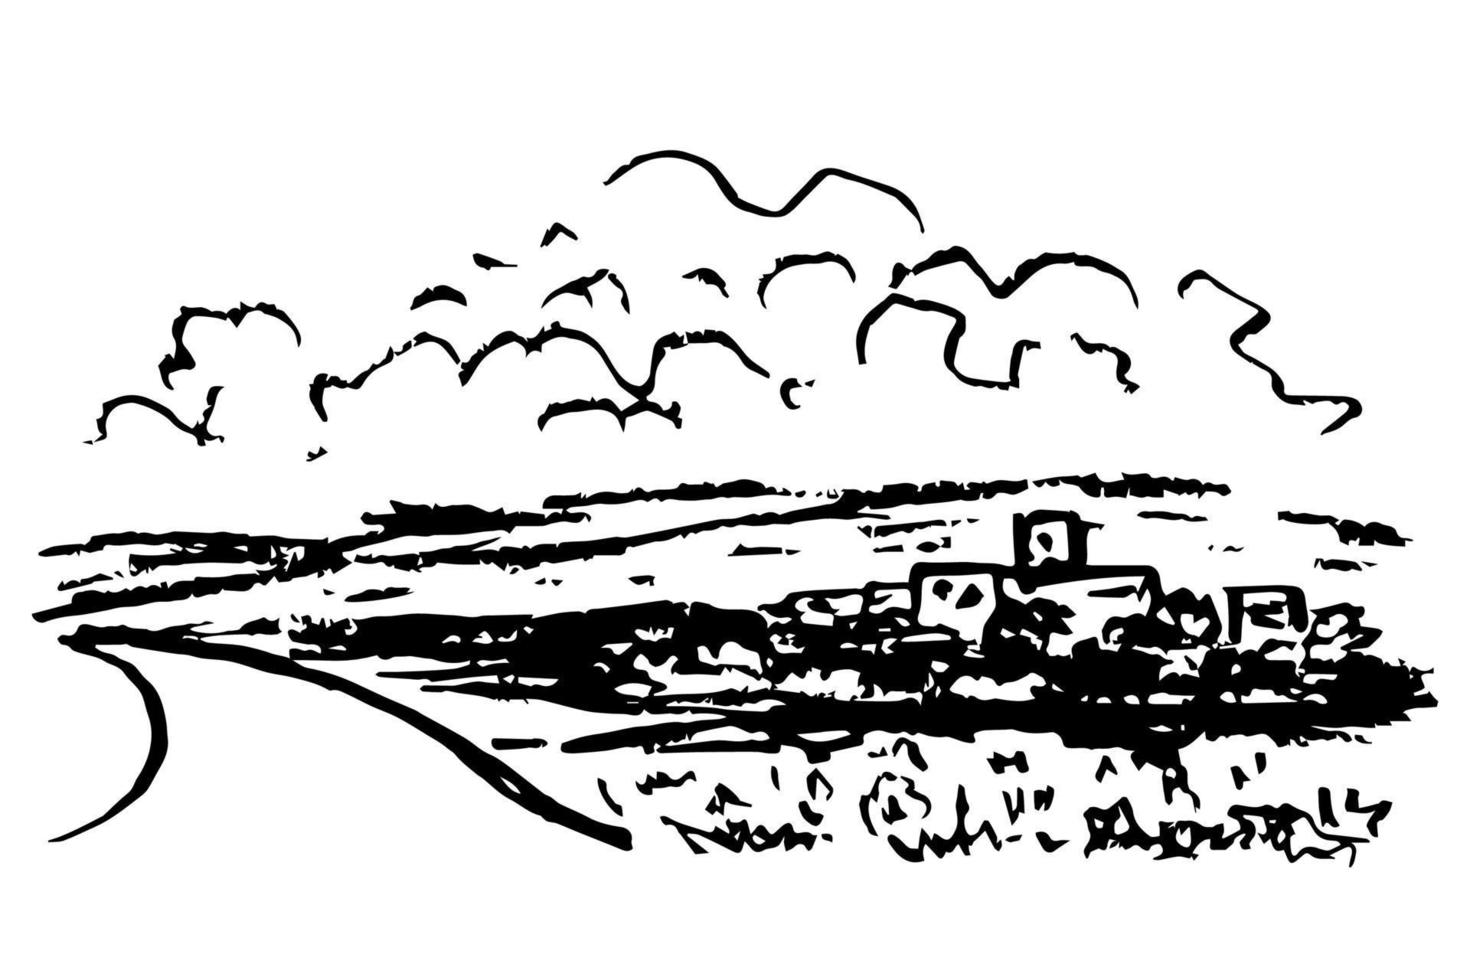 einfache vektorzeichnung des kohlestifts. Natur, Landschaft, Vorortstraße, Landschaft. Silhouette von Bergen, Wolken. schwarz-weiß-skizze. vektor